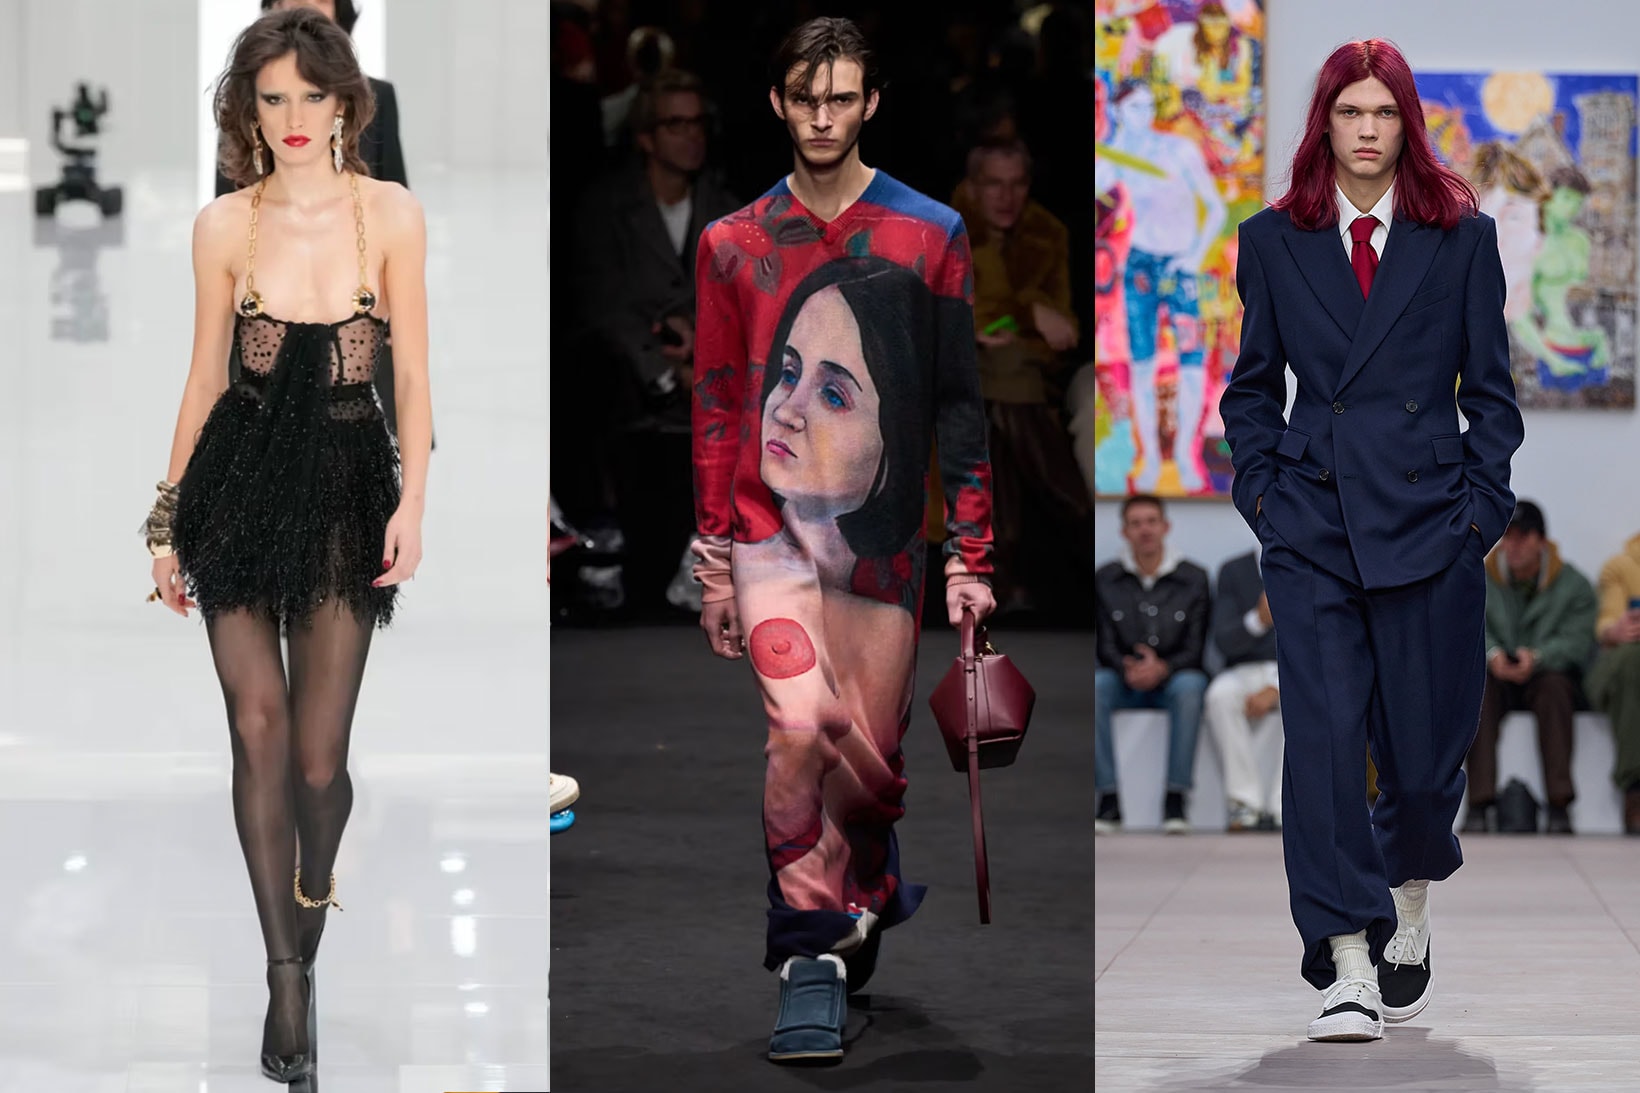 men's fashion week paris florence milan dsquared wales bonner twins runway models